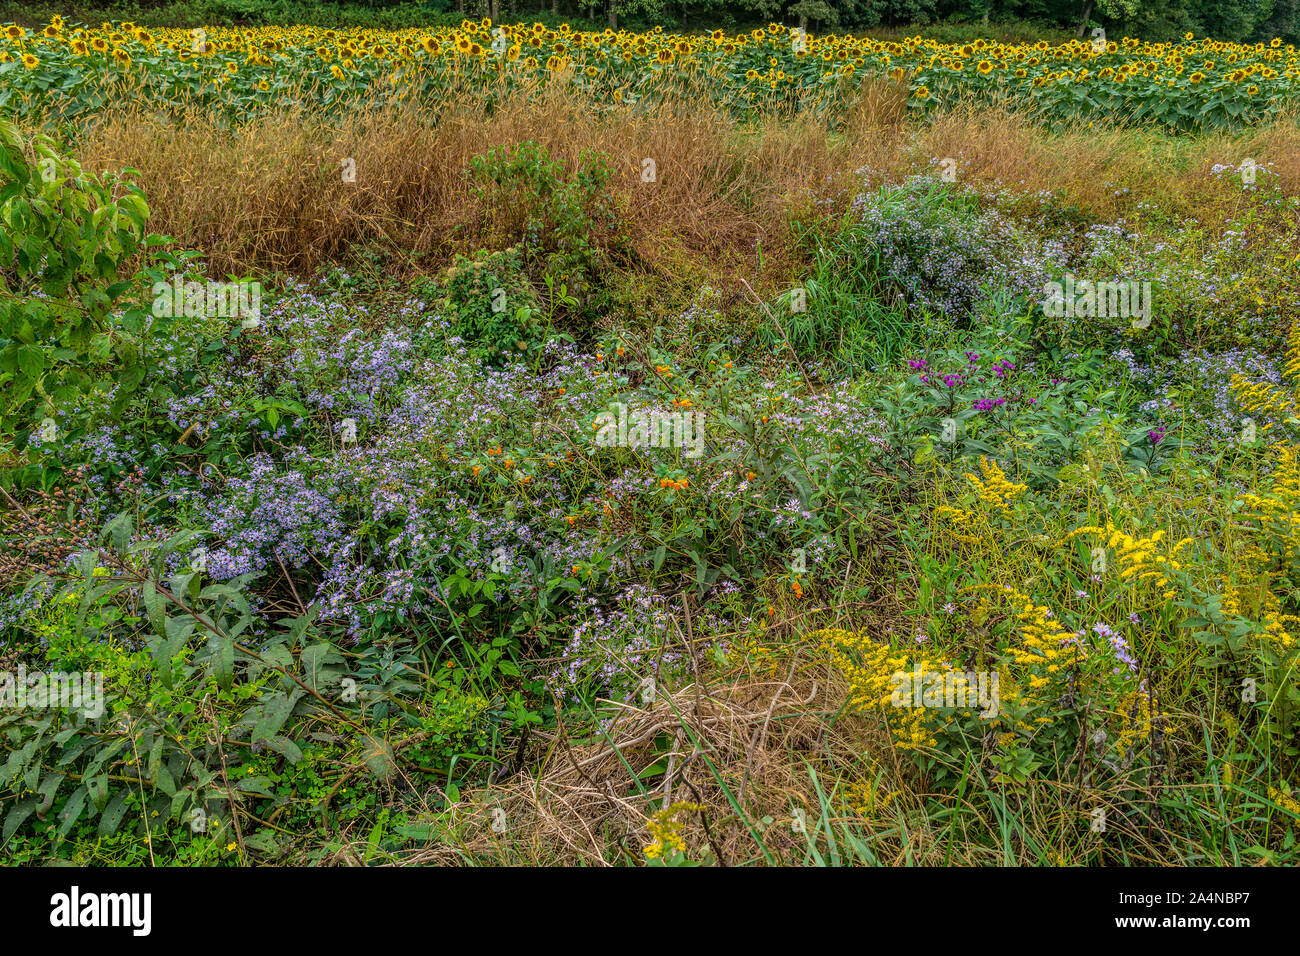 Hohe Gräser und bunten wildflowers in einem Feld mit Sonnenblumen blühen im Hintergrund im Laufe des Tages im Herbst Stockfoto